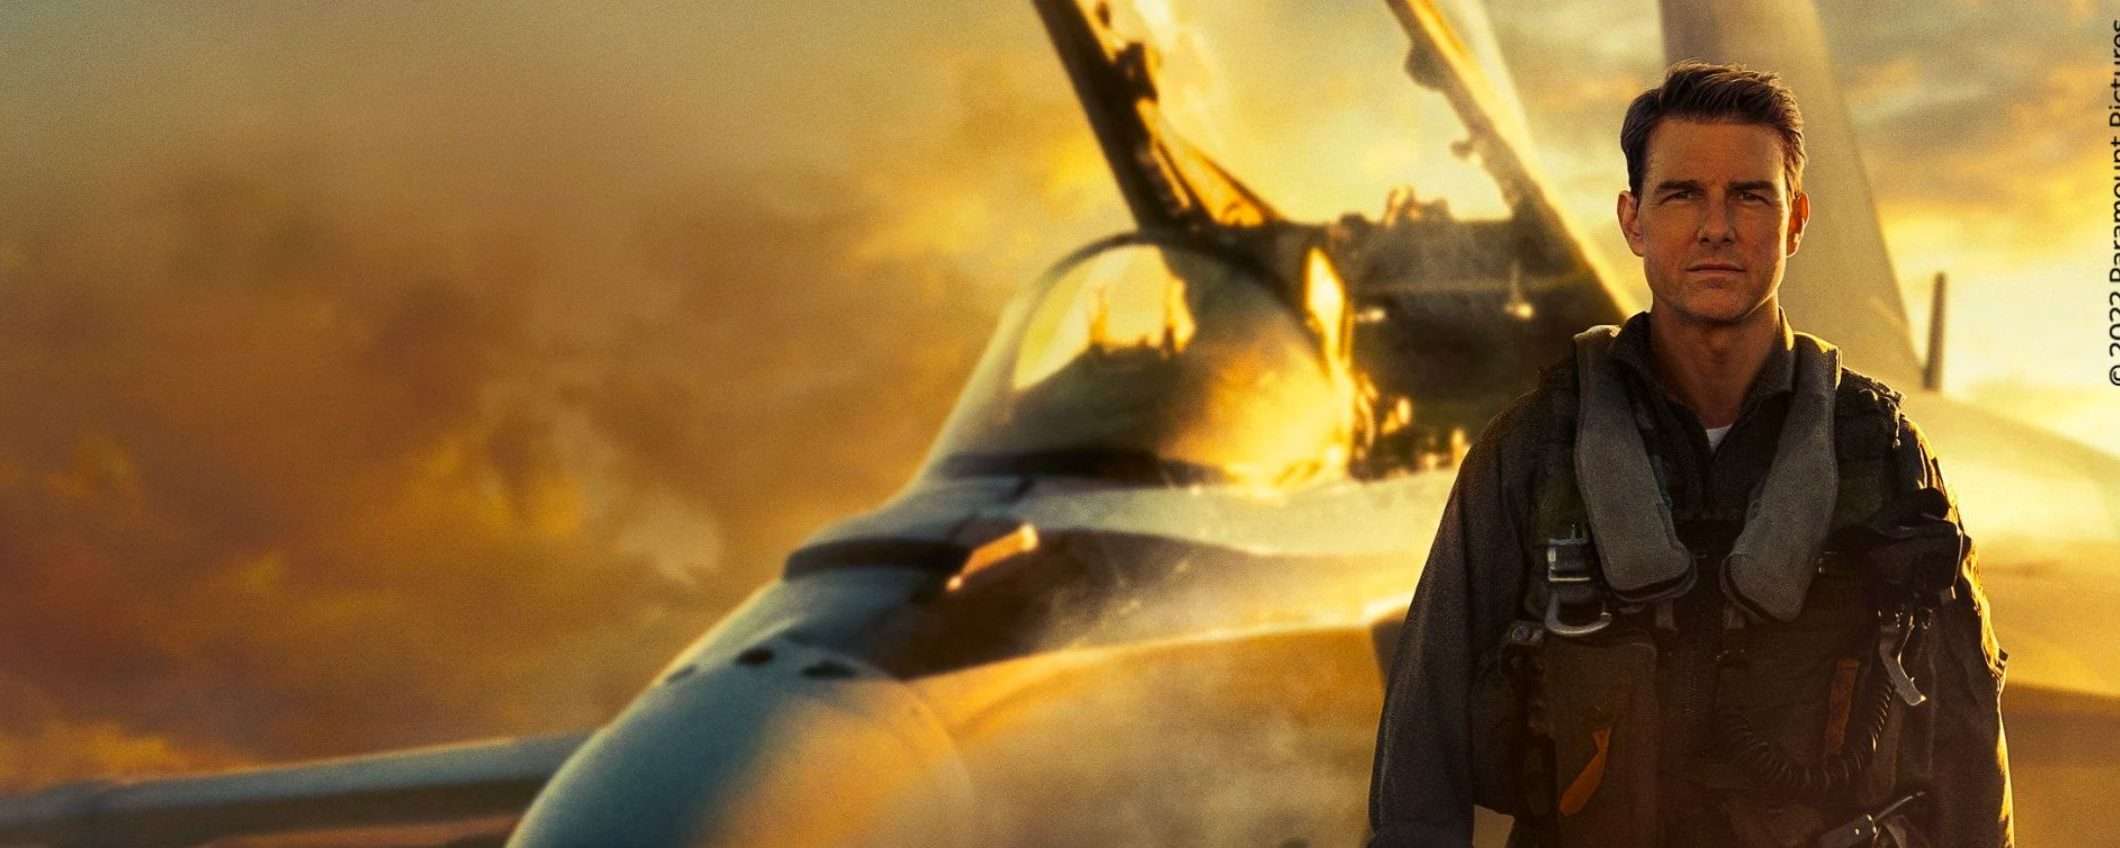 Top Gun Maverick è disponibile su Netflix: approfitta dell'offerta Sky